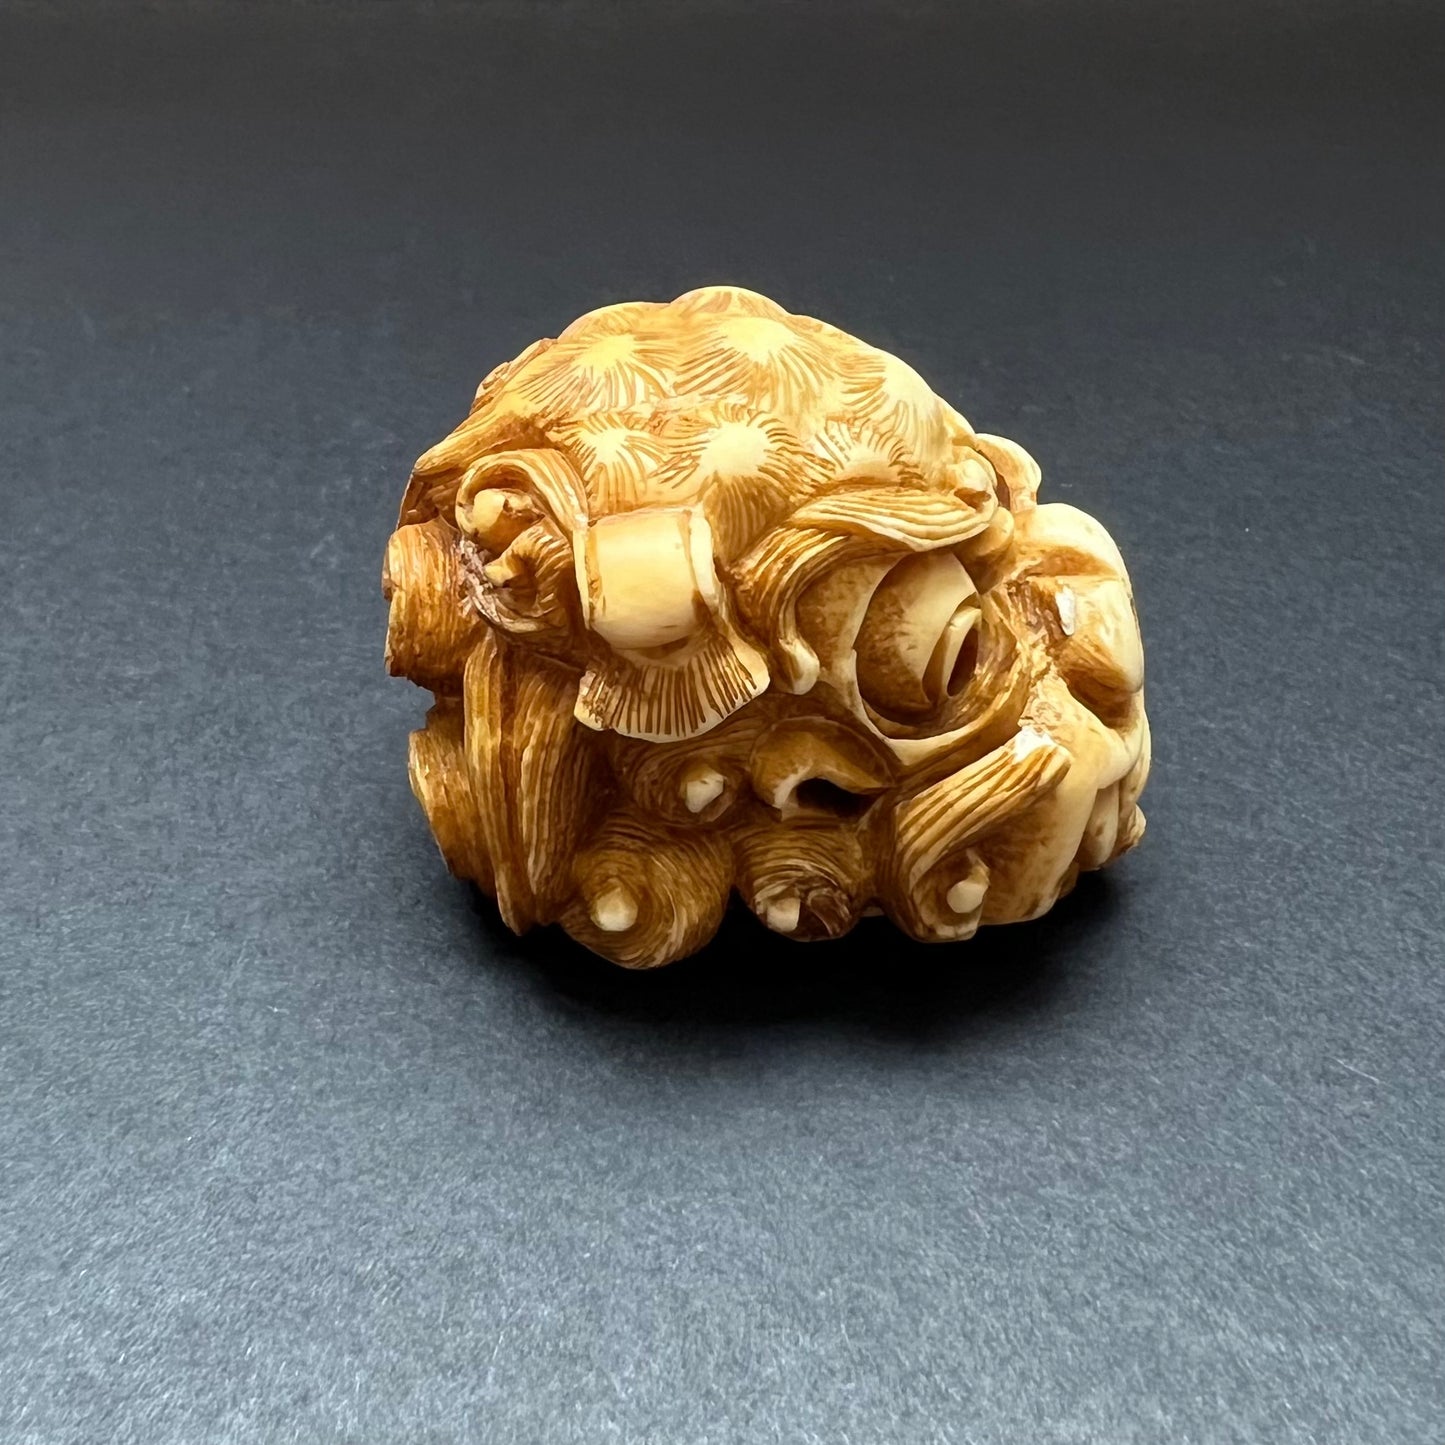 罕见的江户晚期至明治早期象牙狮子面具根付，由 Masakazu 签名。